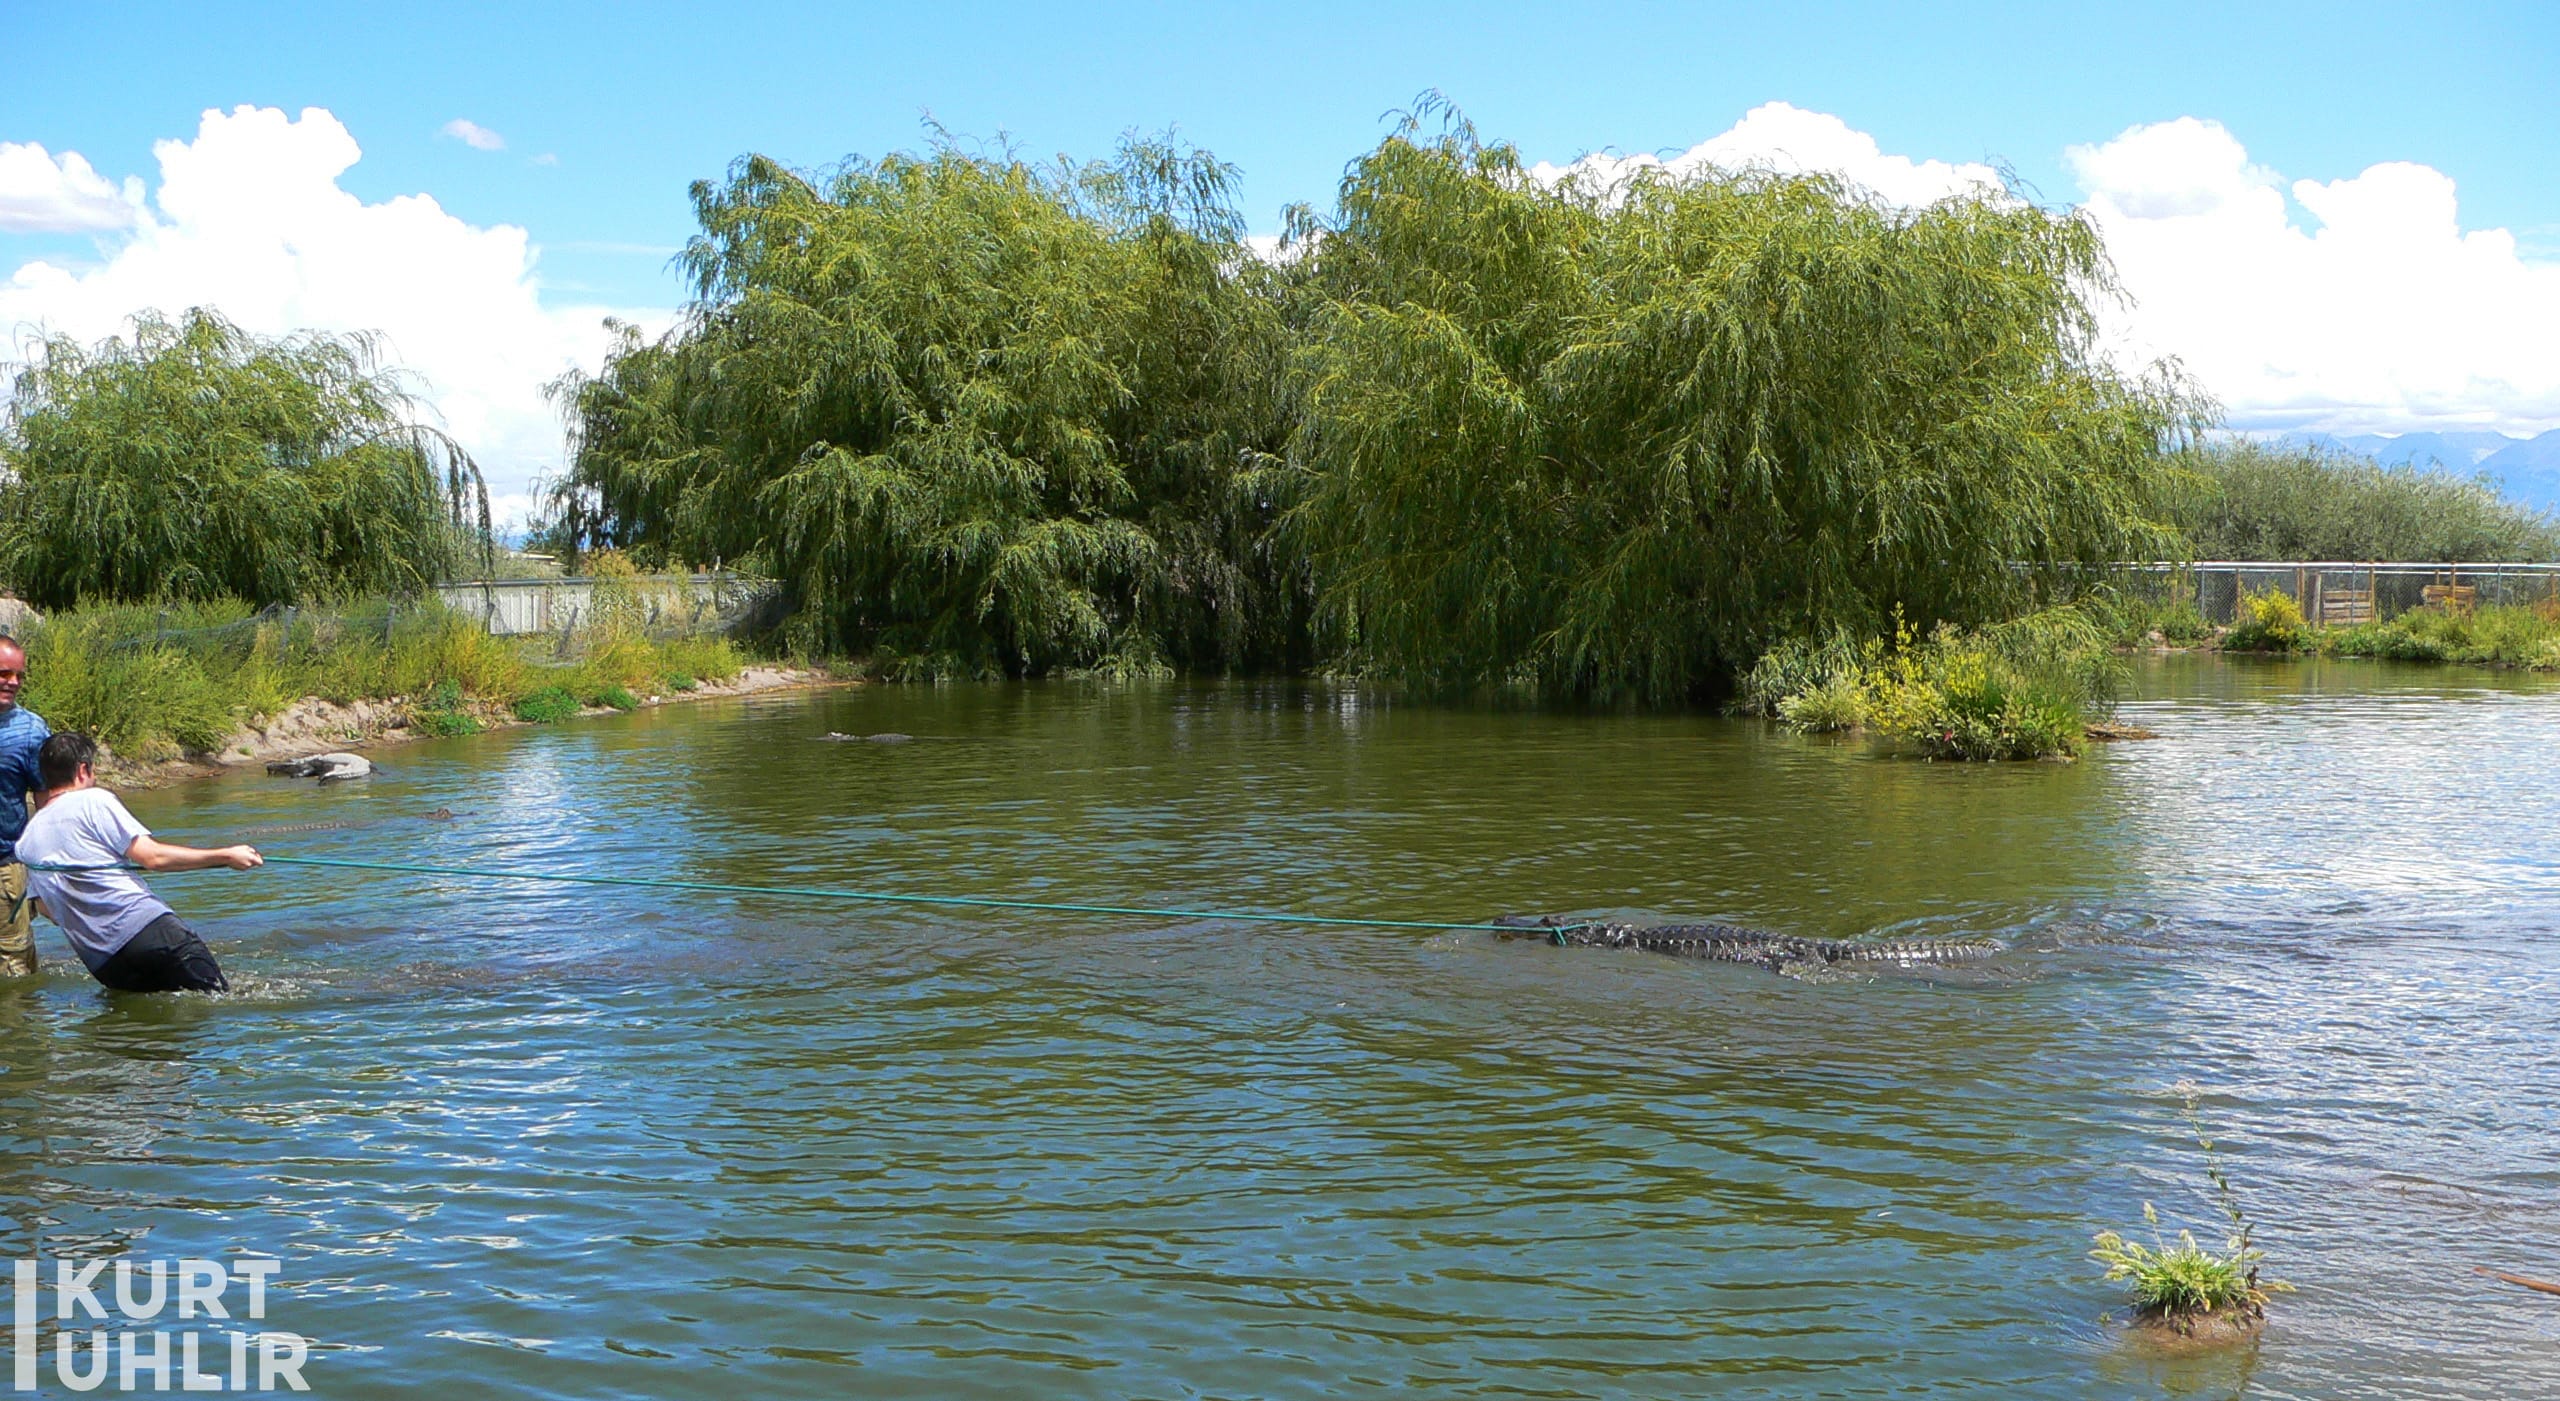 Kurt Uhlir with 10.5" alligator found in the pond